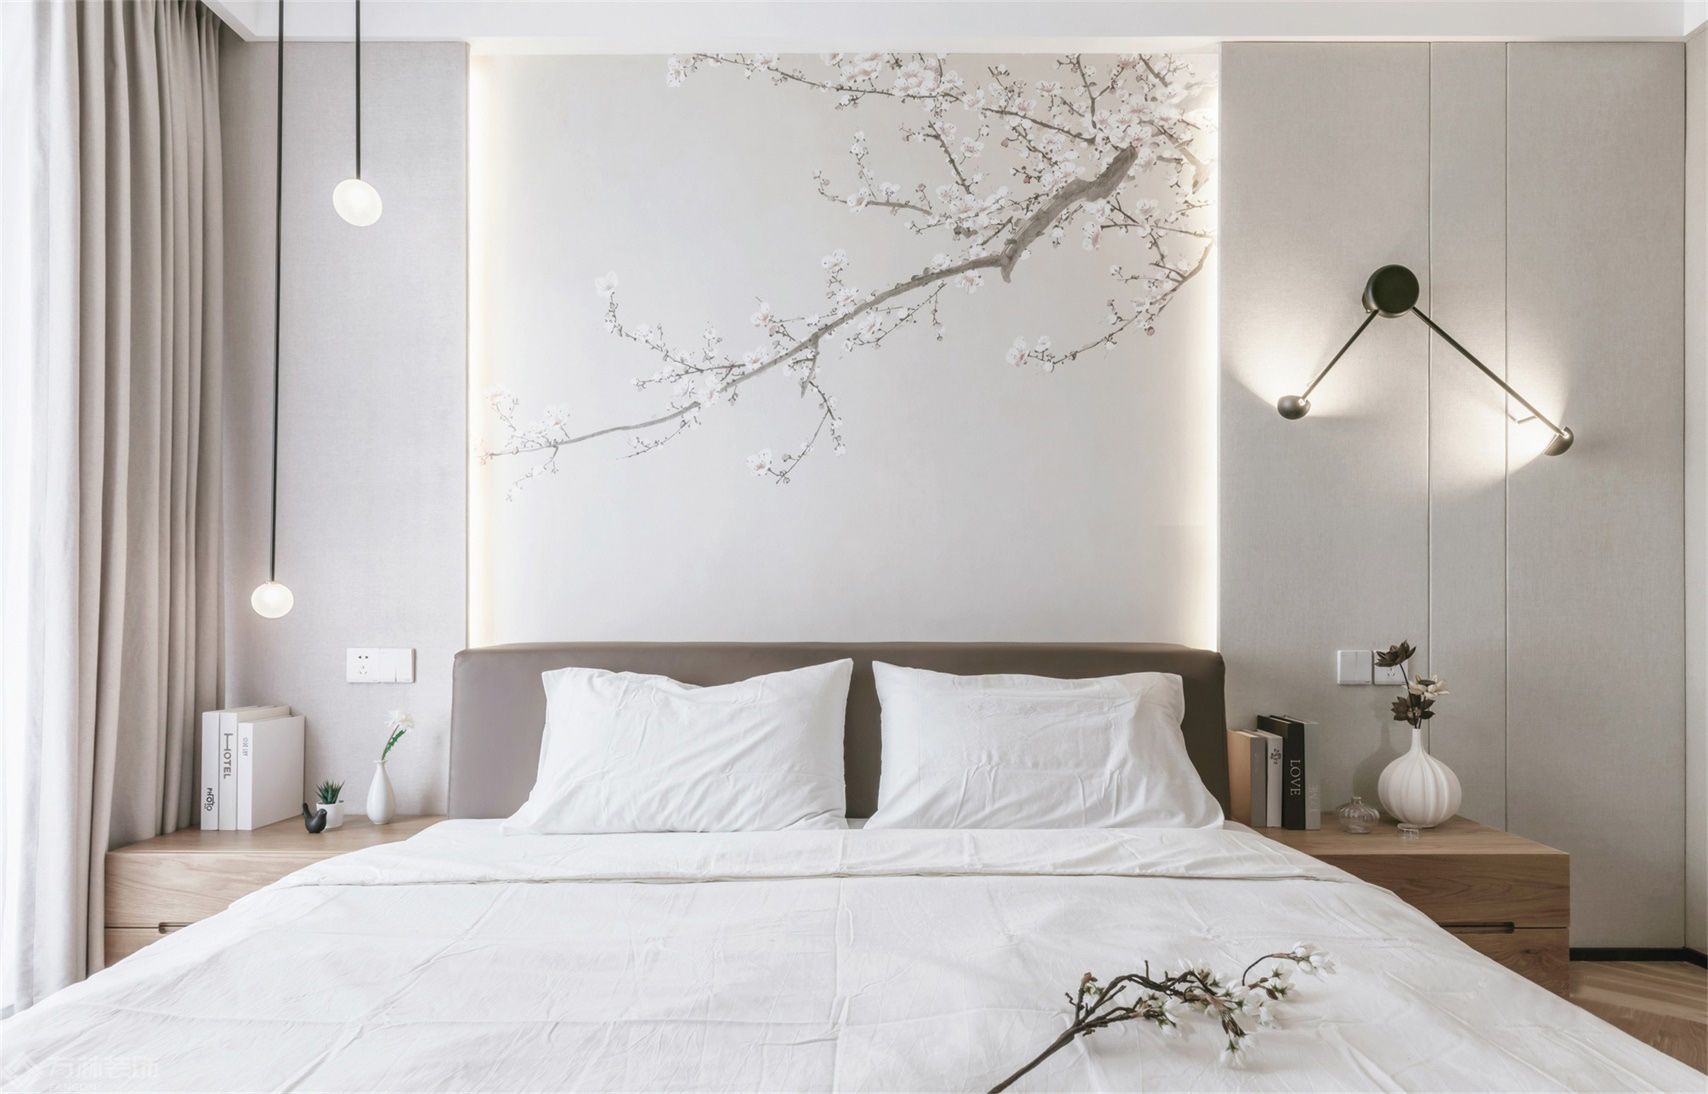 日式风格日式风格-卧室装修效果图